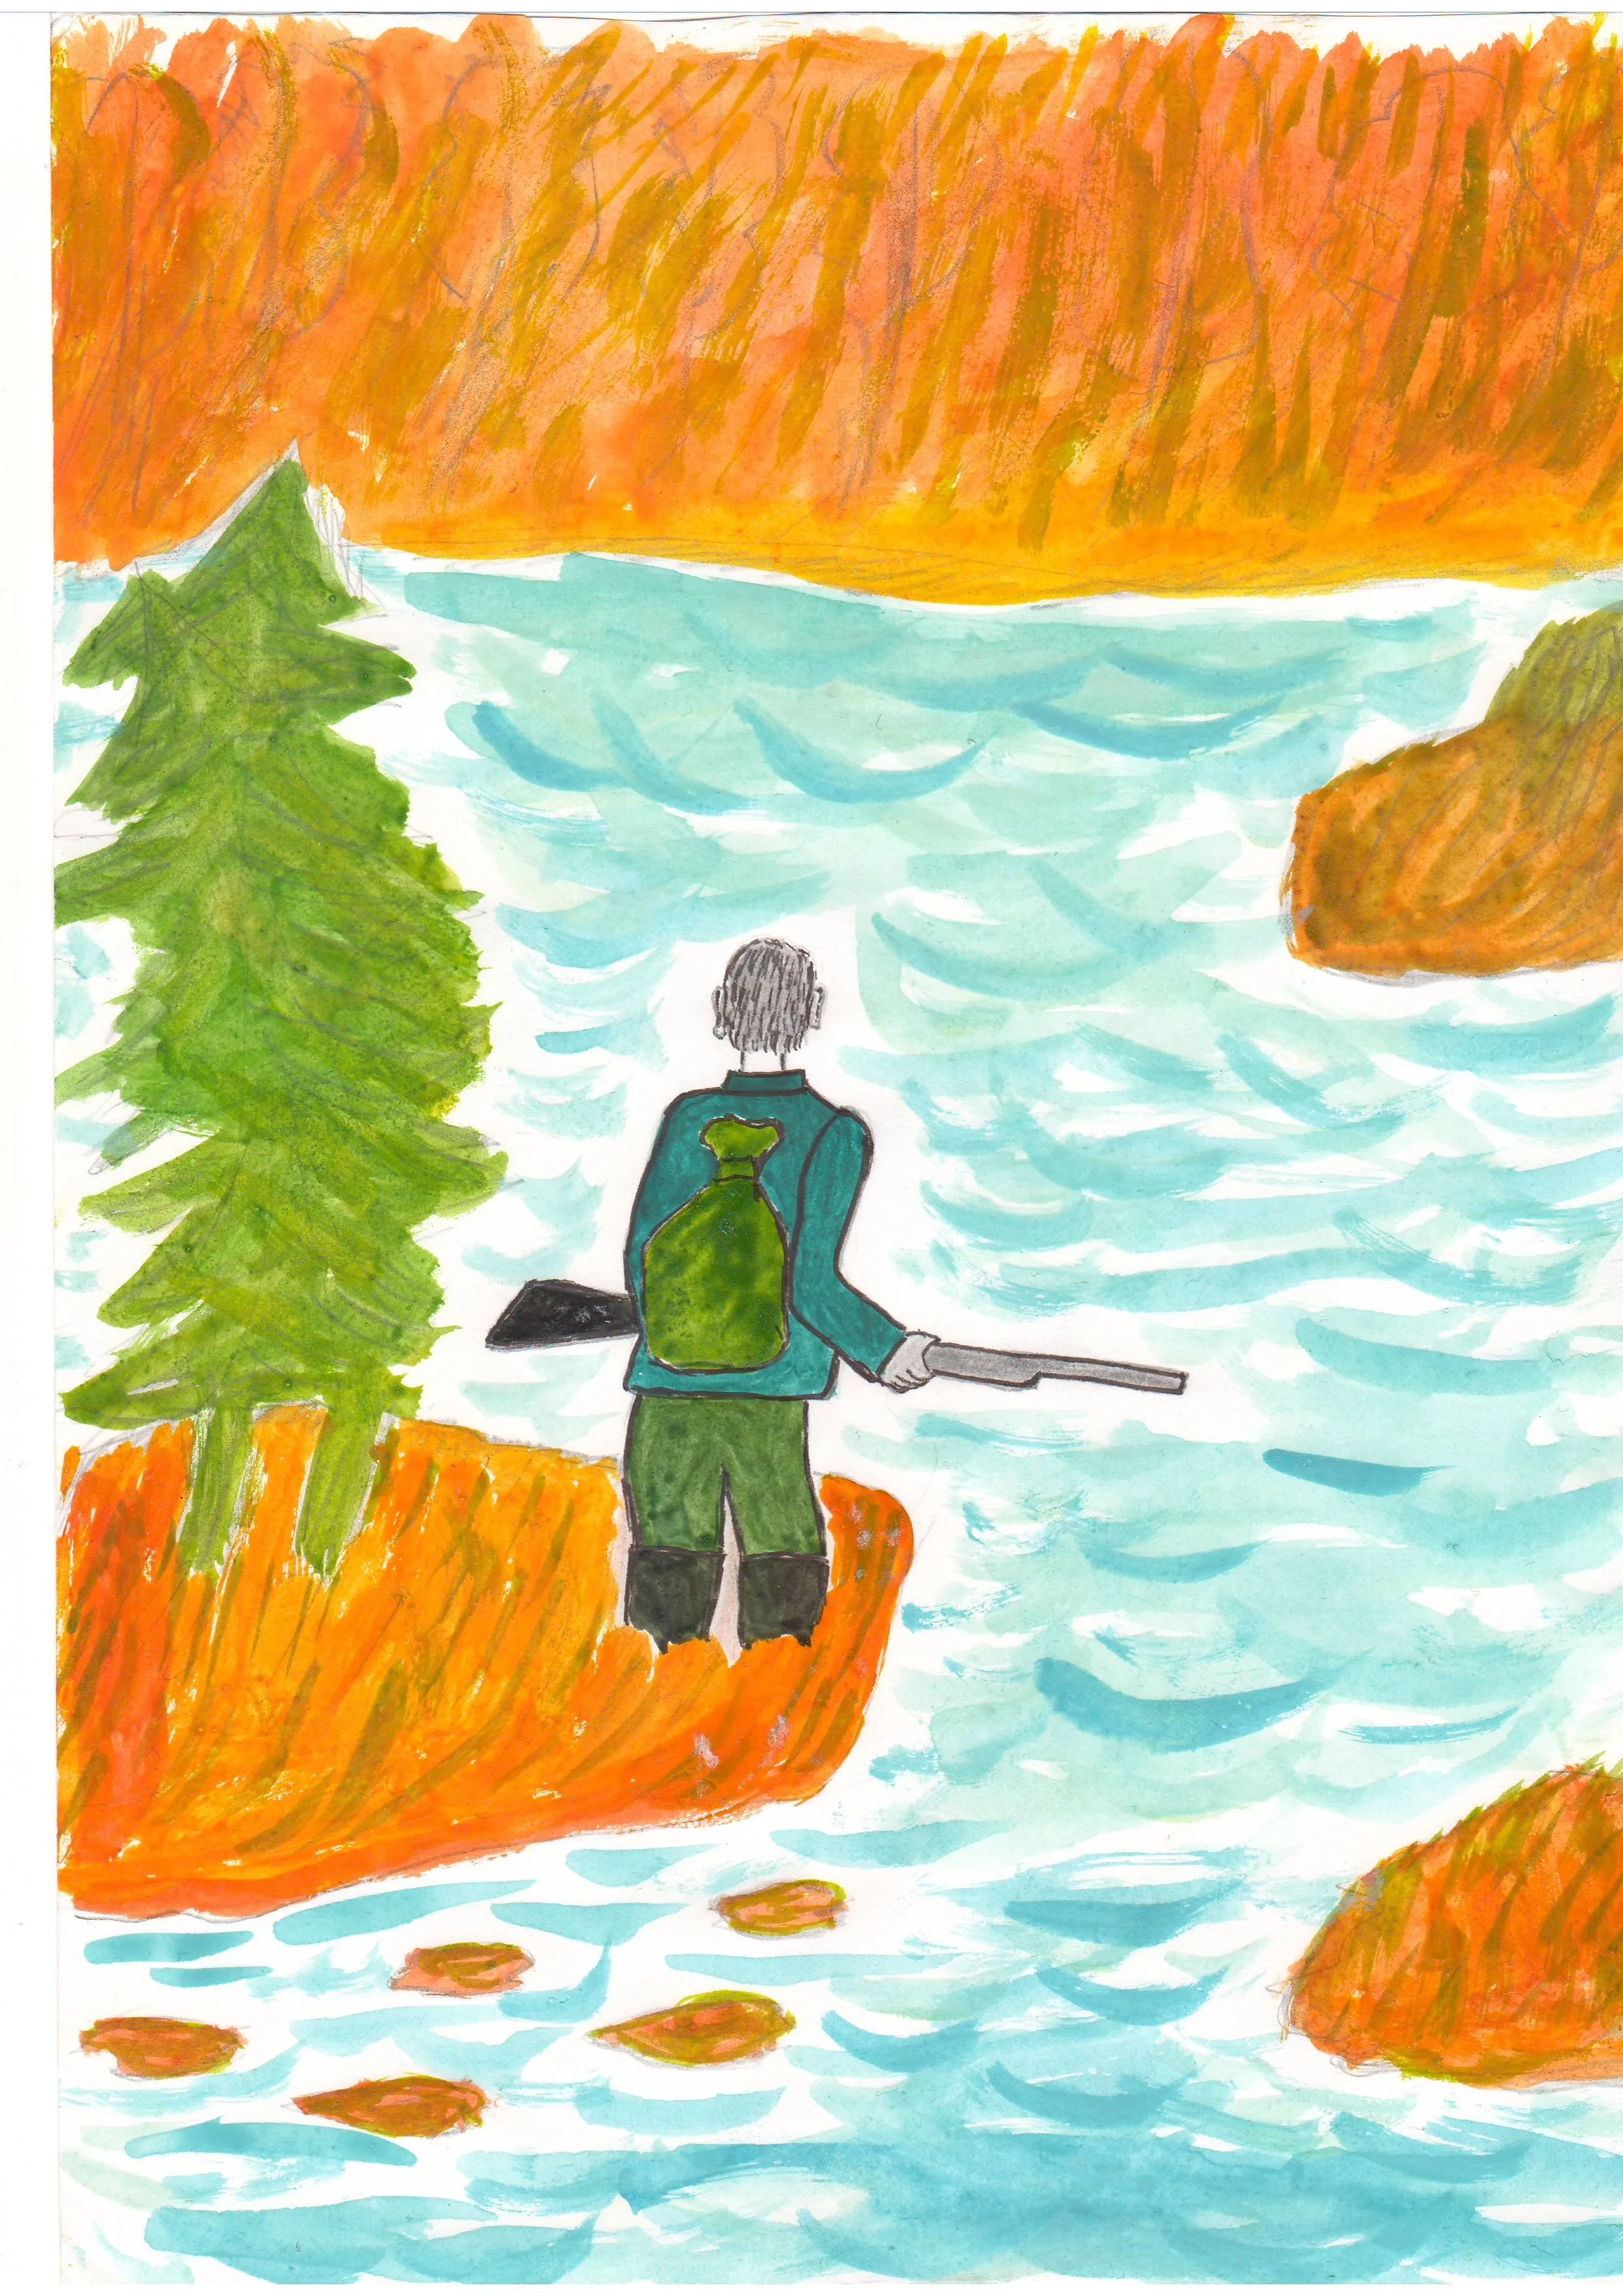 Иллюстрация по литературе 5 класс васюткино озеро. Астафьев 5 класс Васюткино озеро. Астафьев Васюткино озеро иллюстрации.